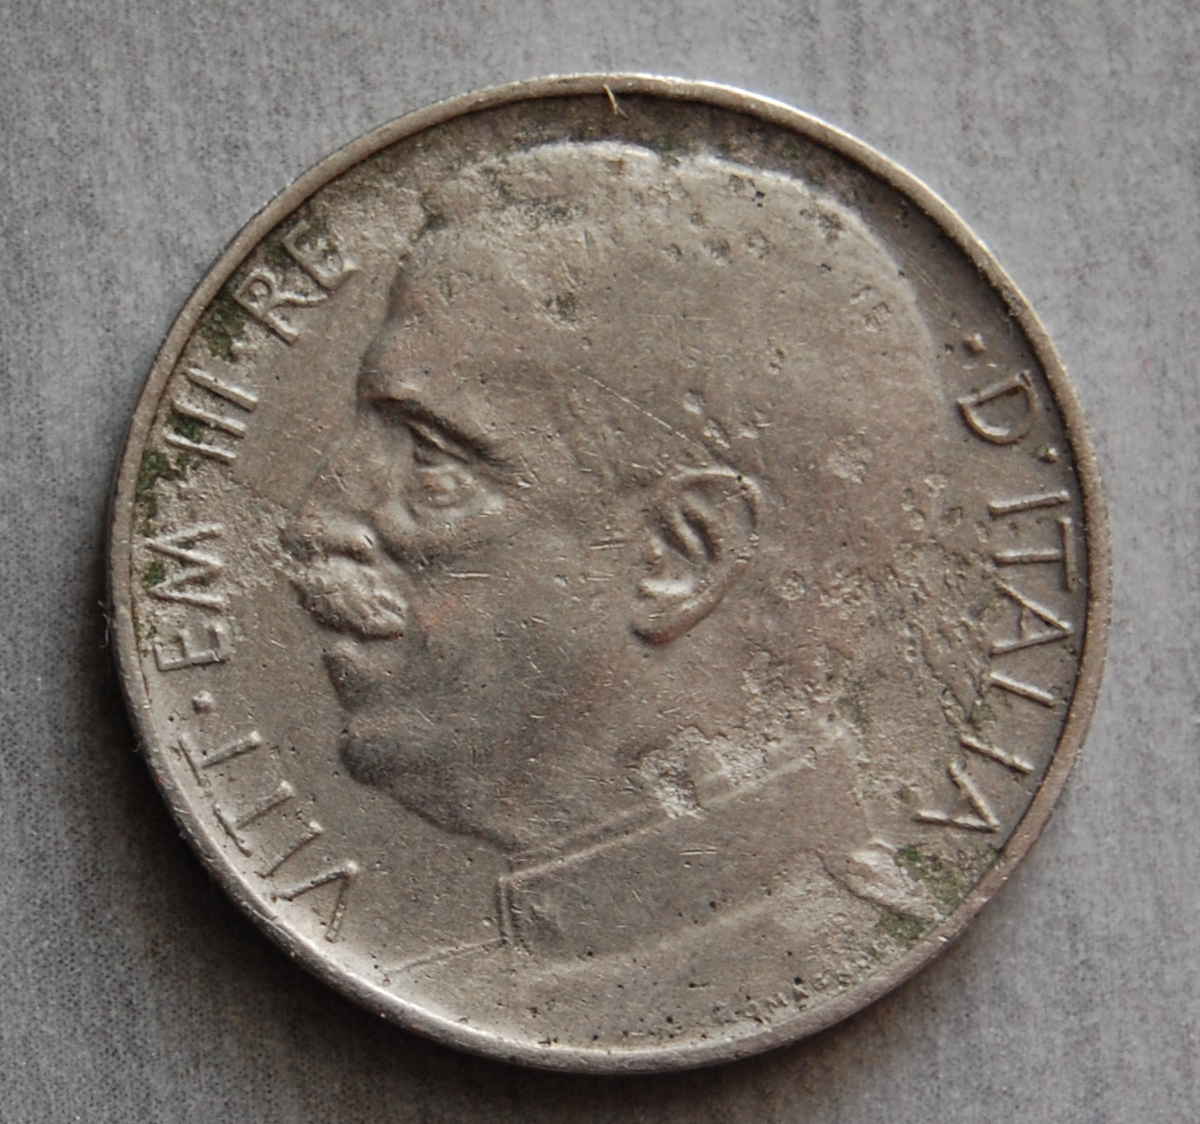  Italien 50 Centesimo 1925  KM-Nr. 61.1 glatter Rand   